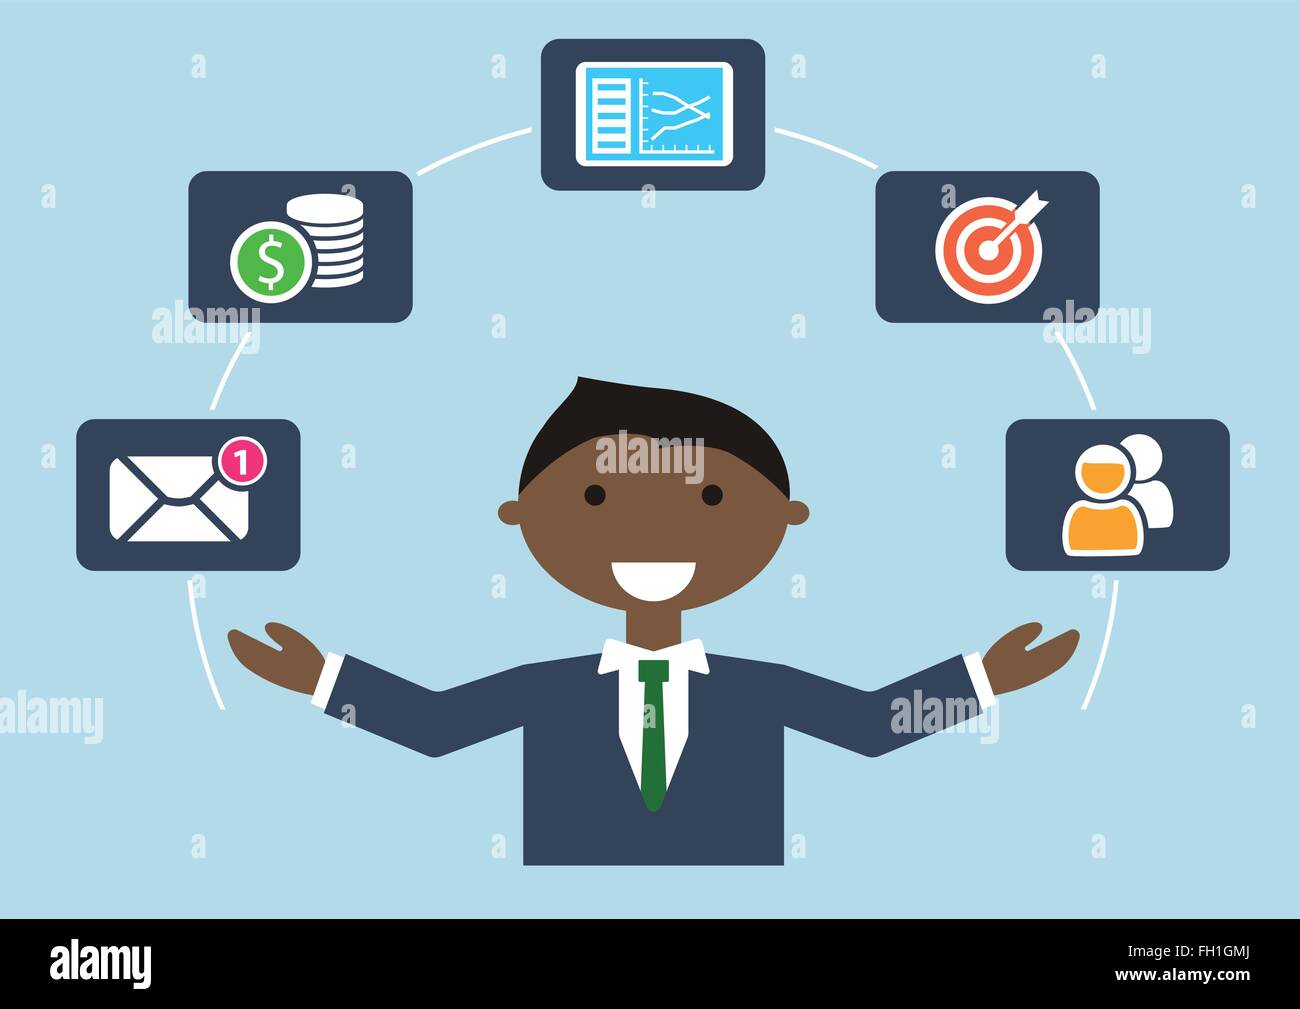 Menschen bei der Arbeit: Person Multitasking verschiedene Aktivitäten von Cartoon Charakter jonglieren visualisiert Elemente wie e-Mail, Budget, Ziel Stock Vektor